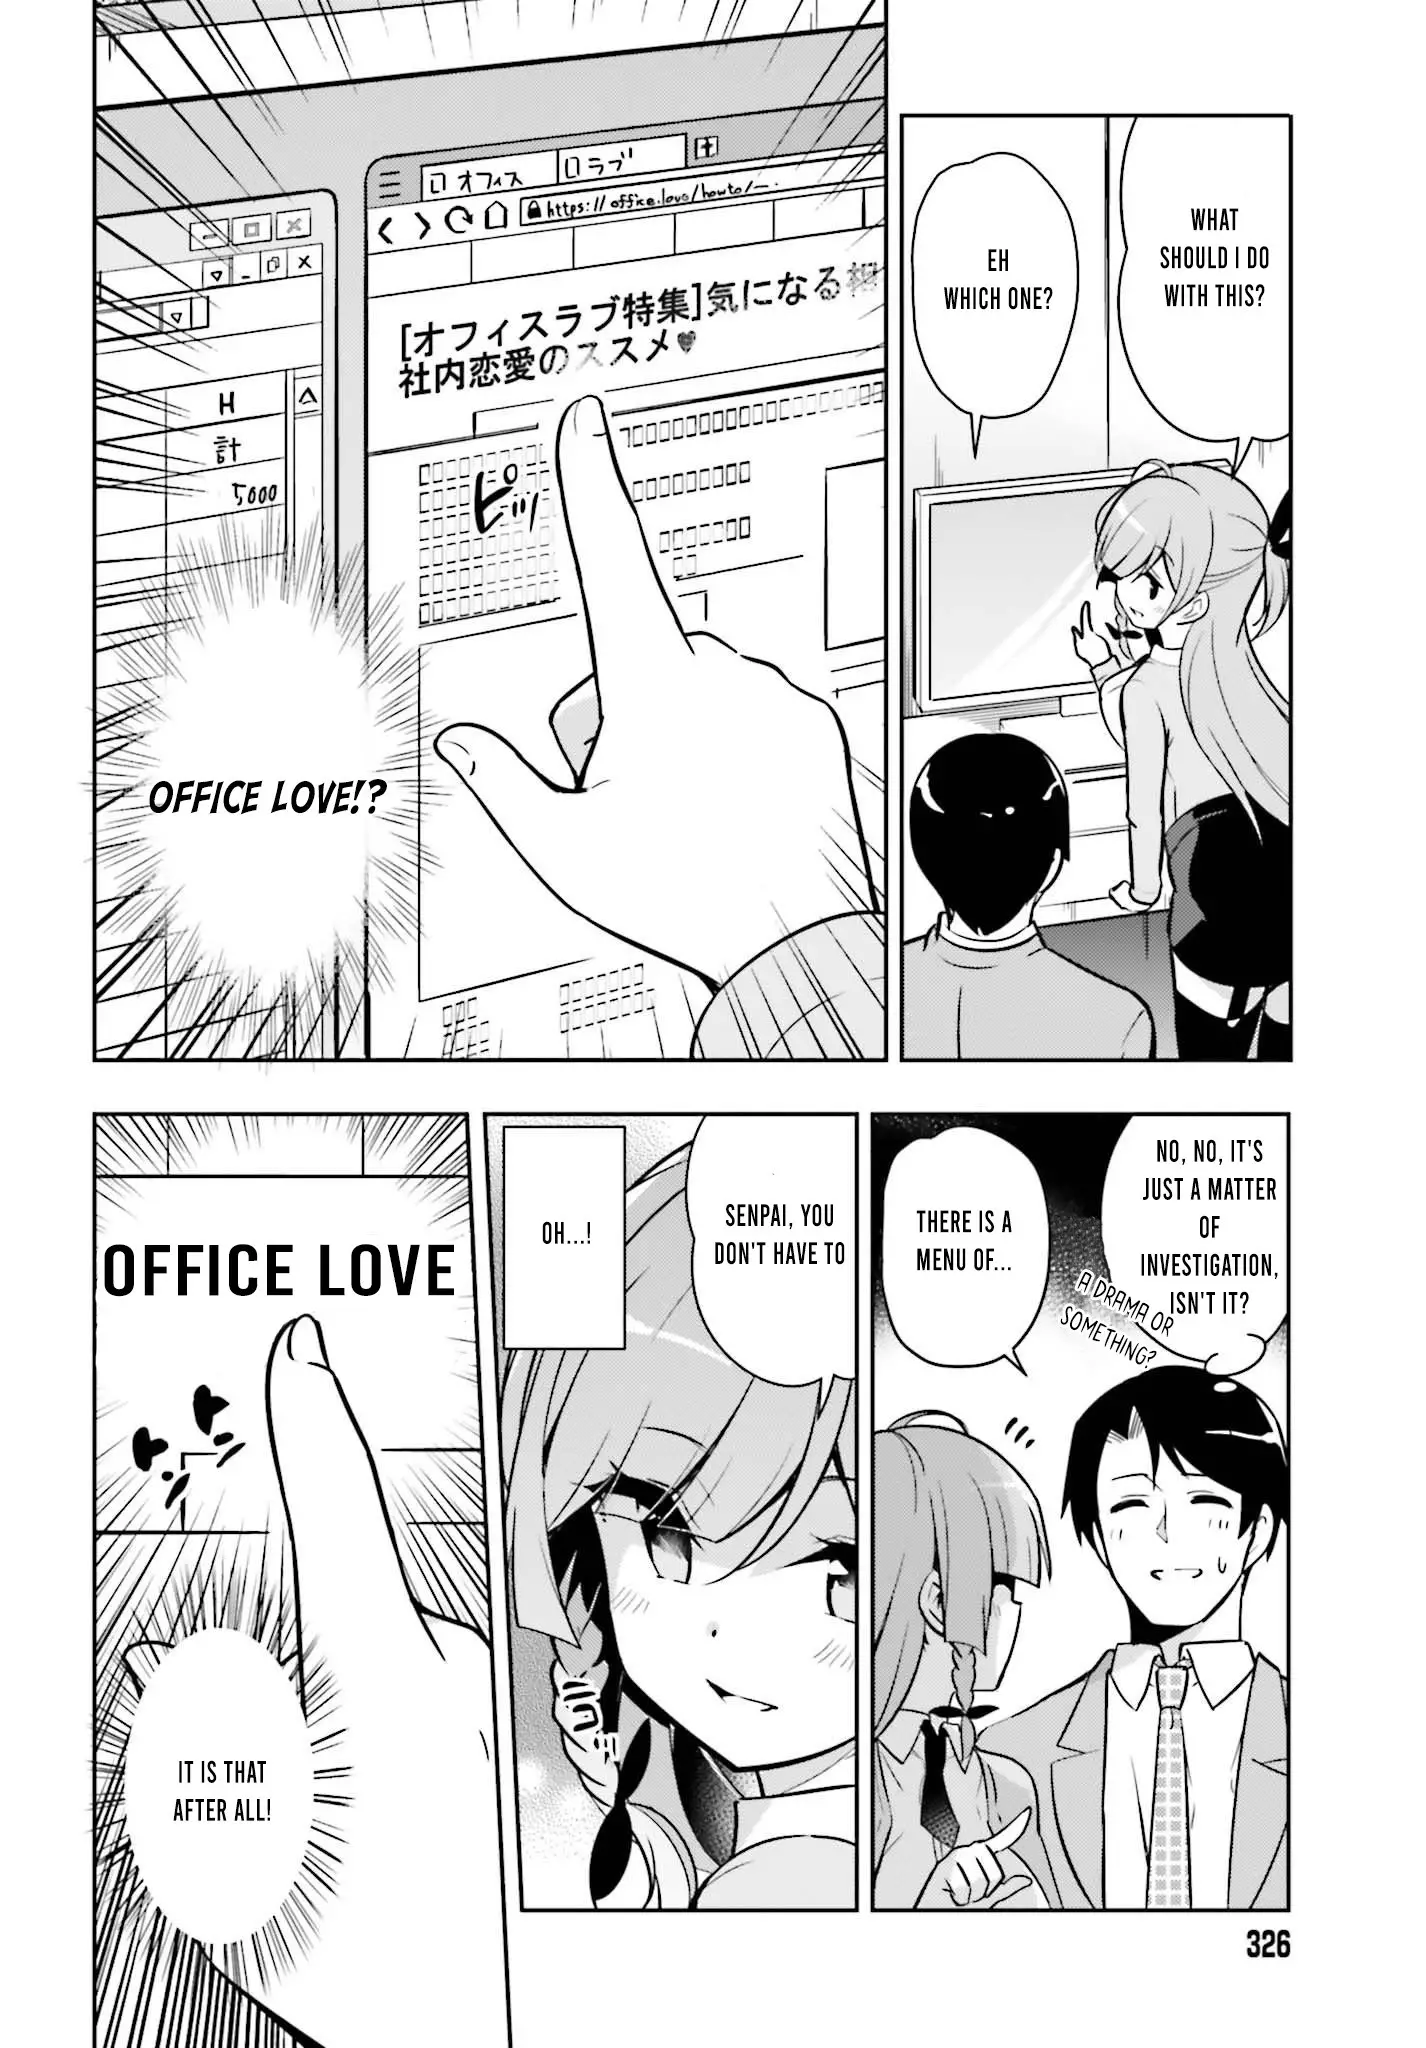 Senpai! Let's Have An Office Romance ♪ - 1 page 11